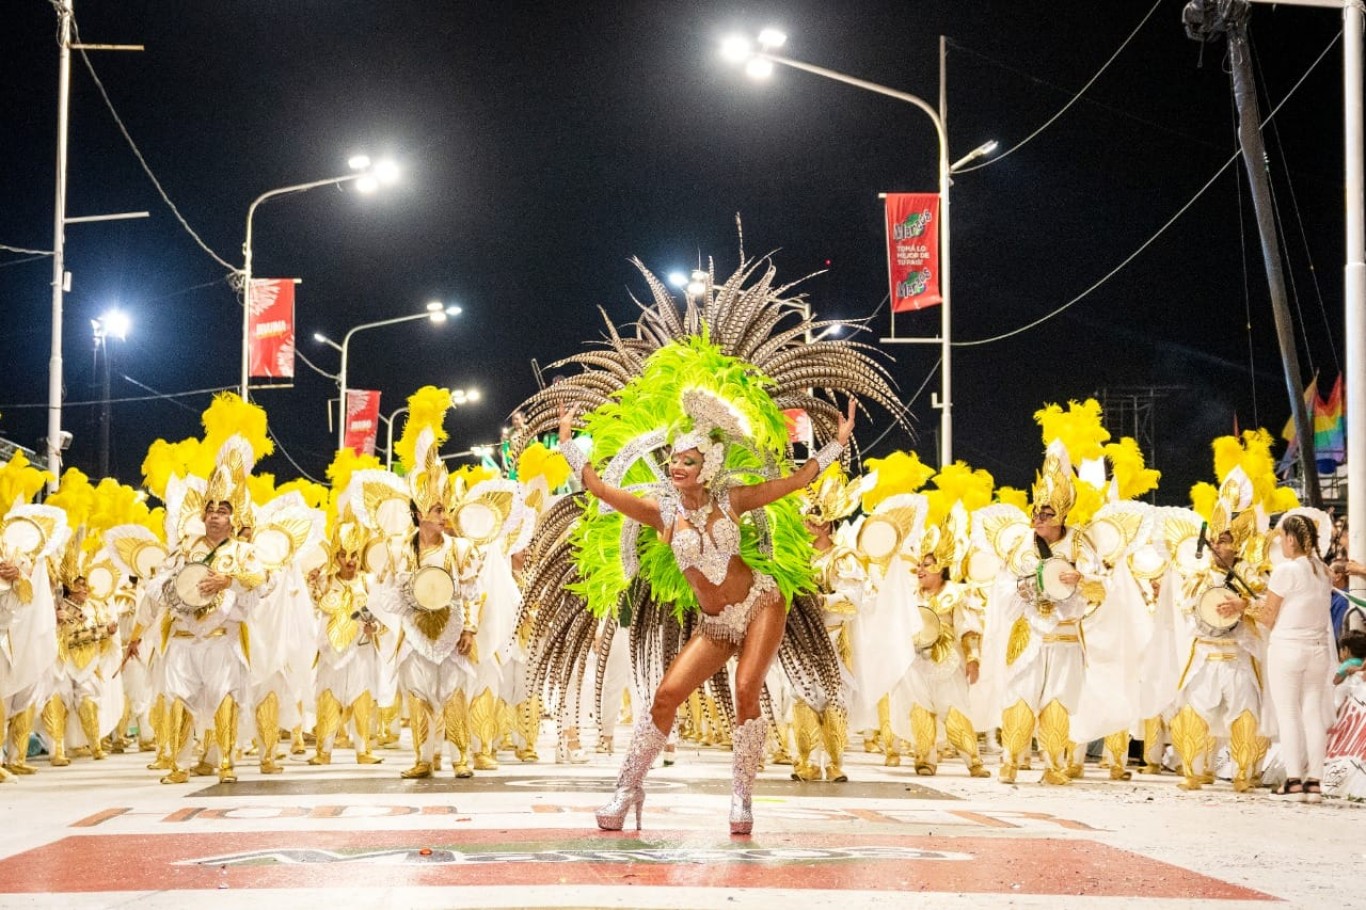 Eduardo Cristina: "El carnaval es la necesidad de la gente de poder transmitir, contar y vivir junto a otros una experiencia distinta”